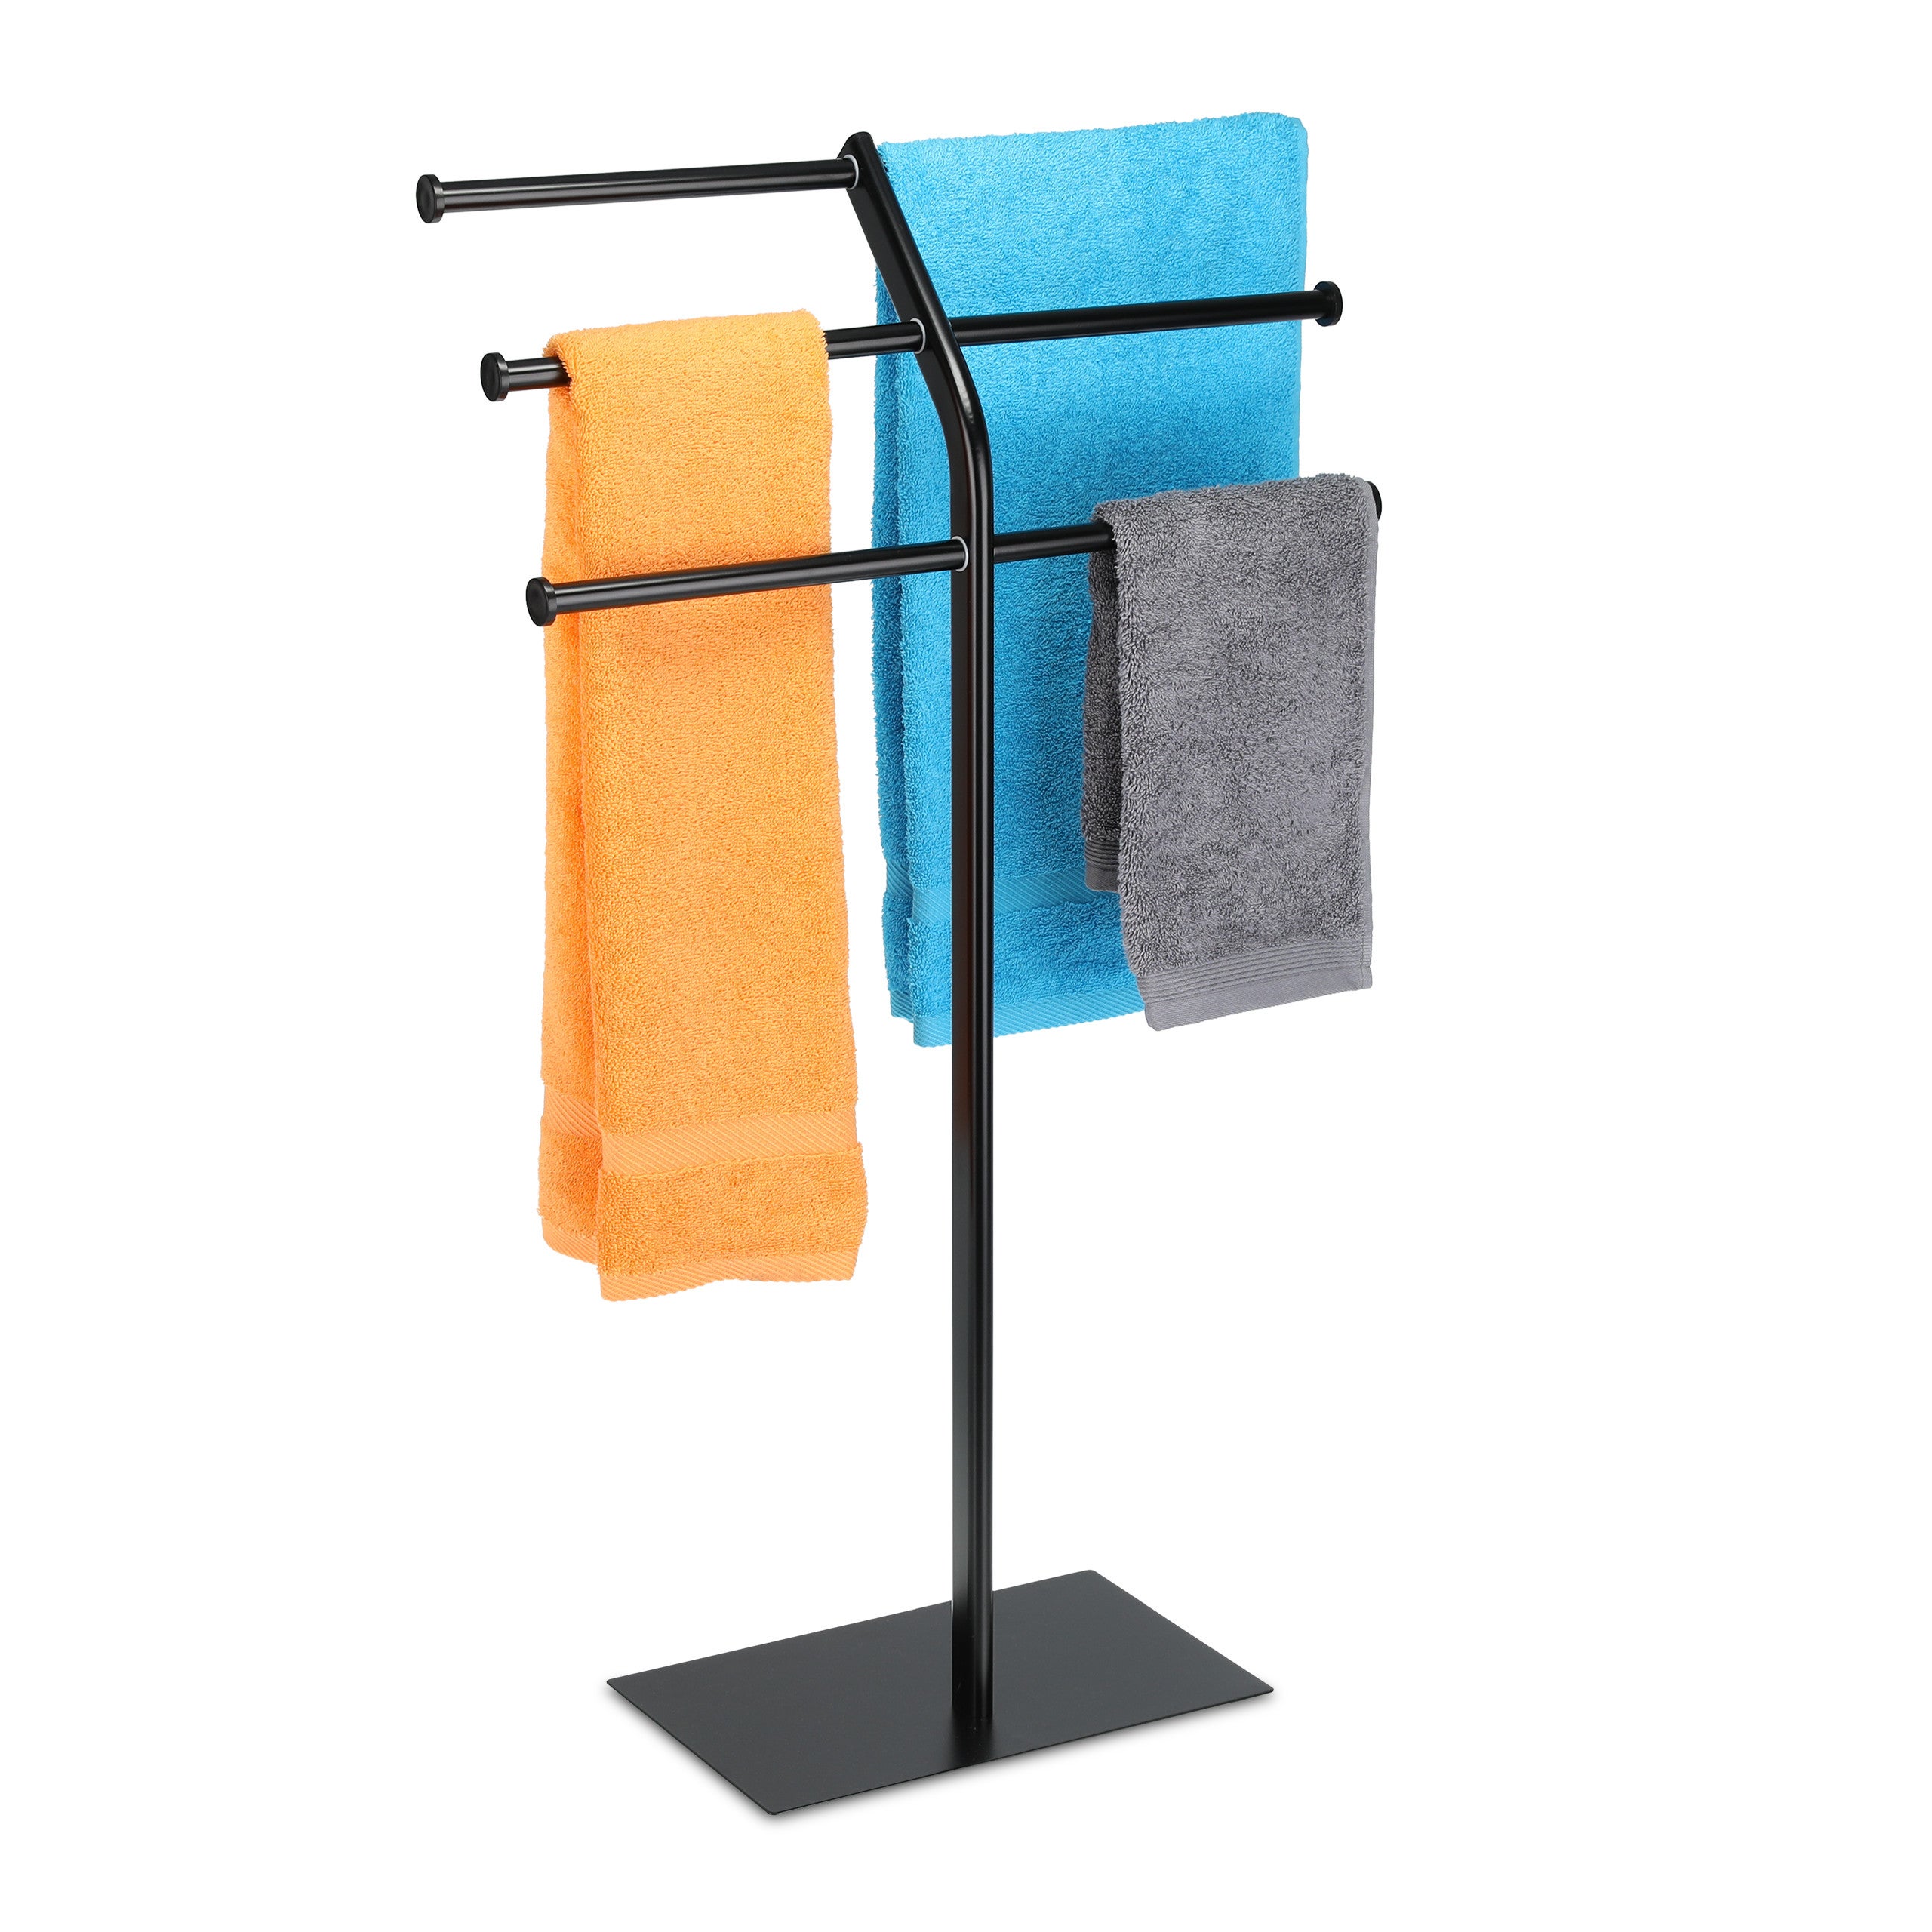 Support porte-serviette sur pied 3 barres mobile acier jaune - RETIF